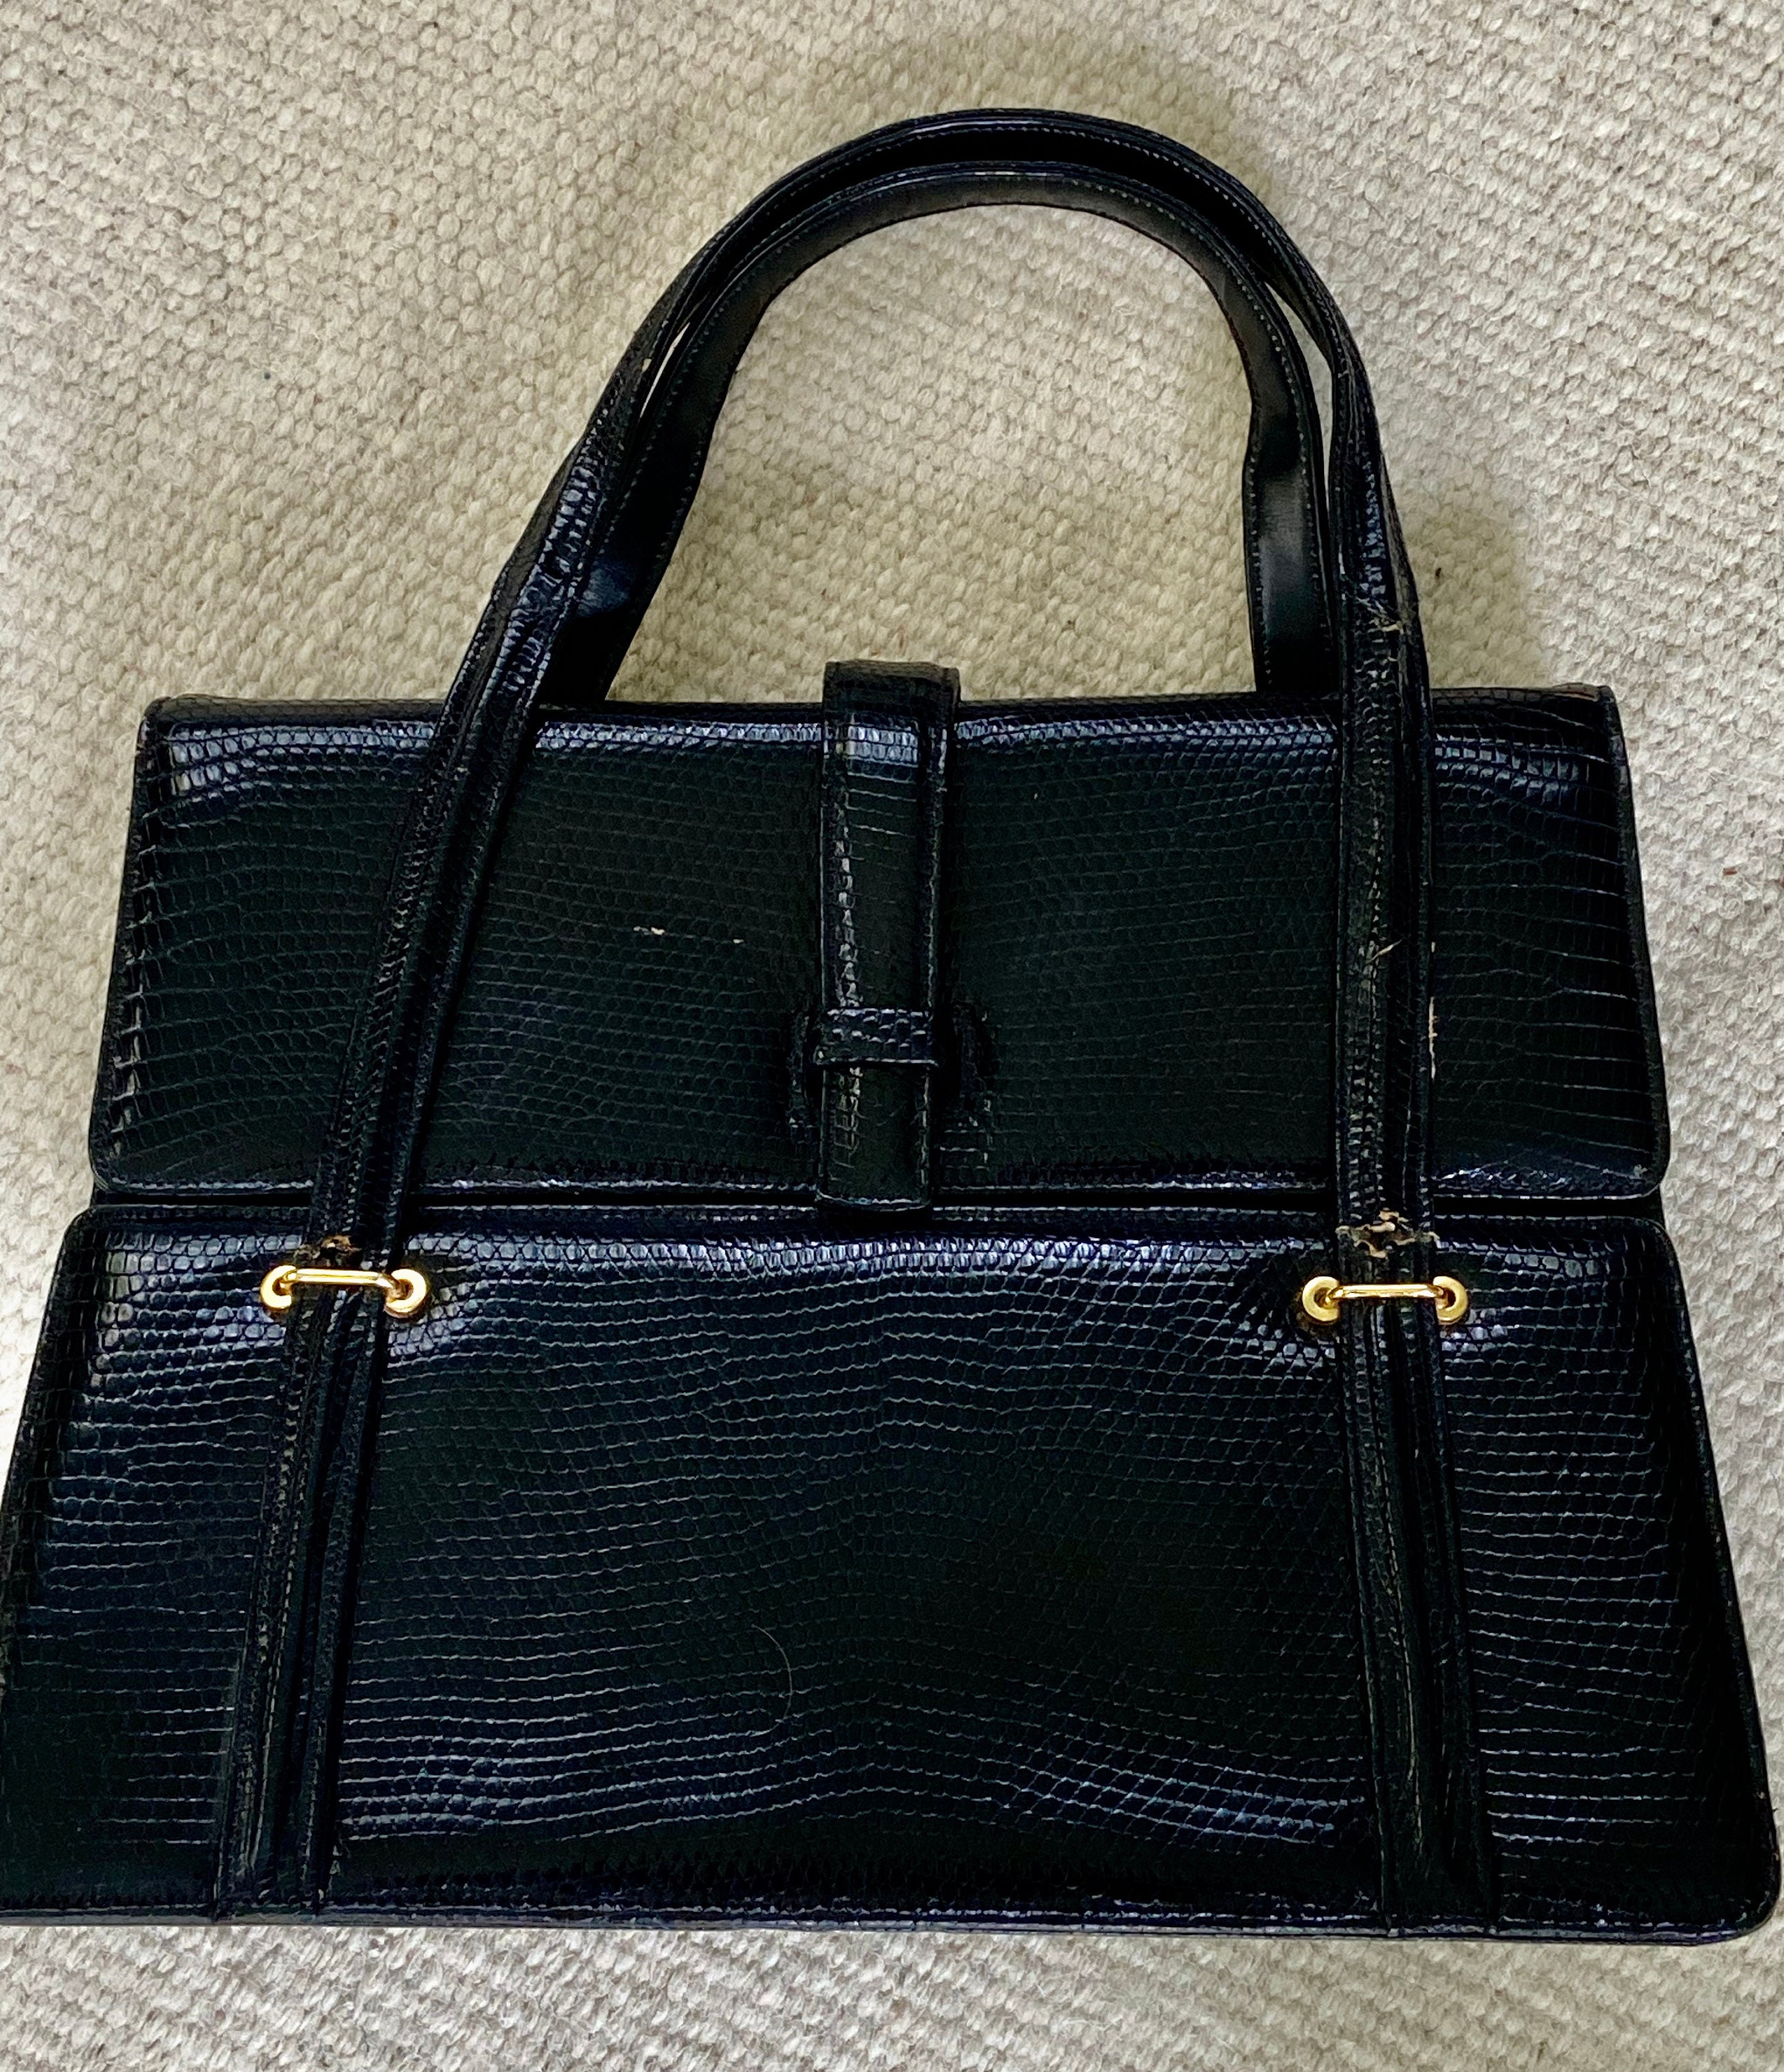 FERNANDE DESGRANGES black baby crocodile skin handbag with pocket